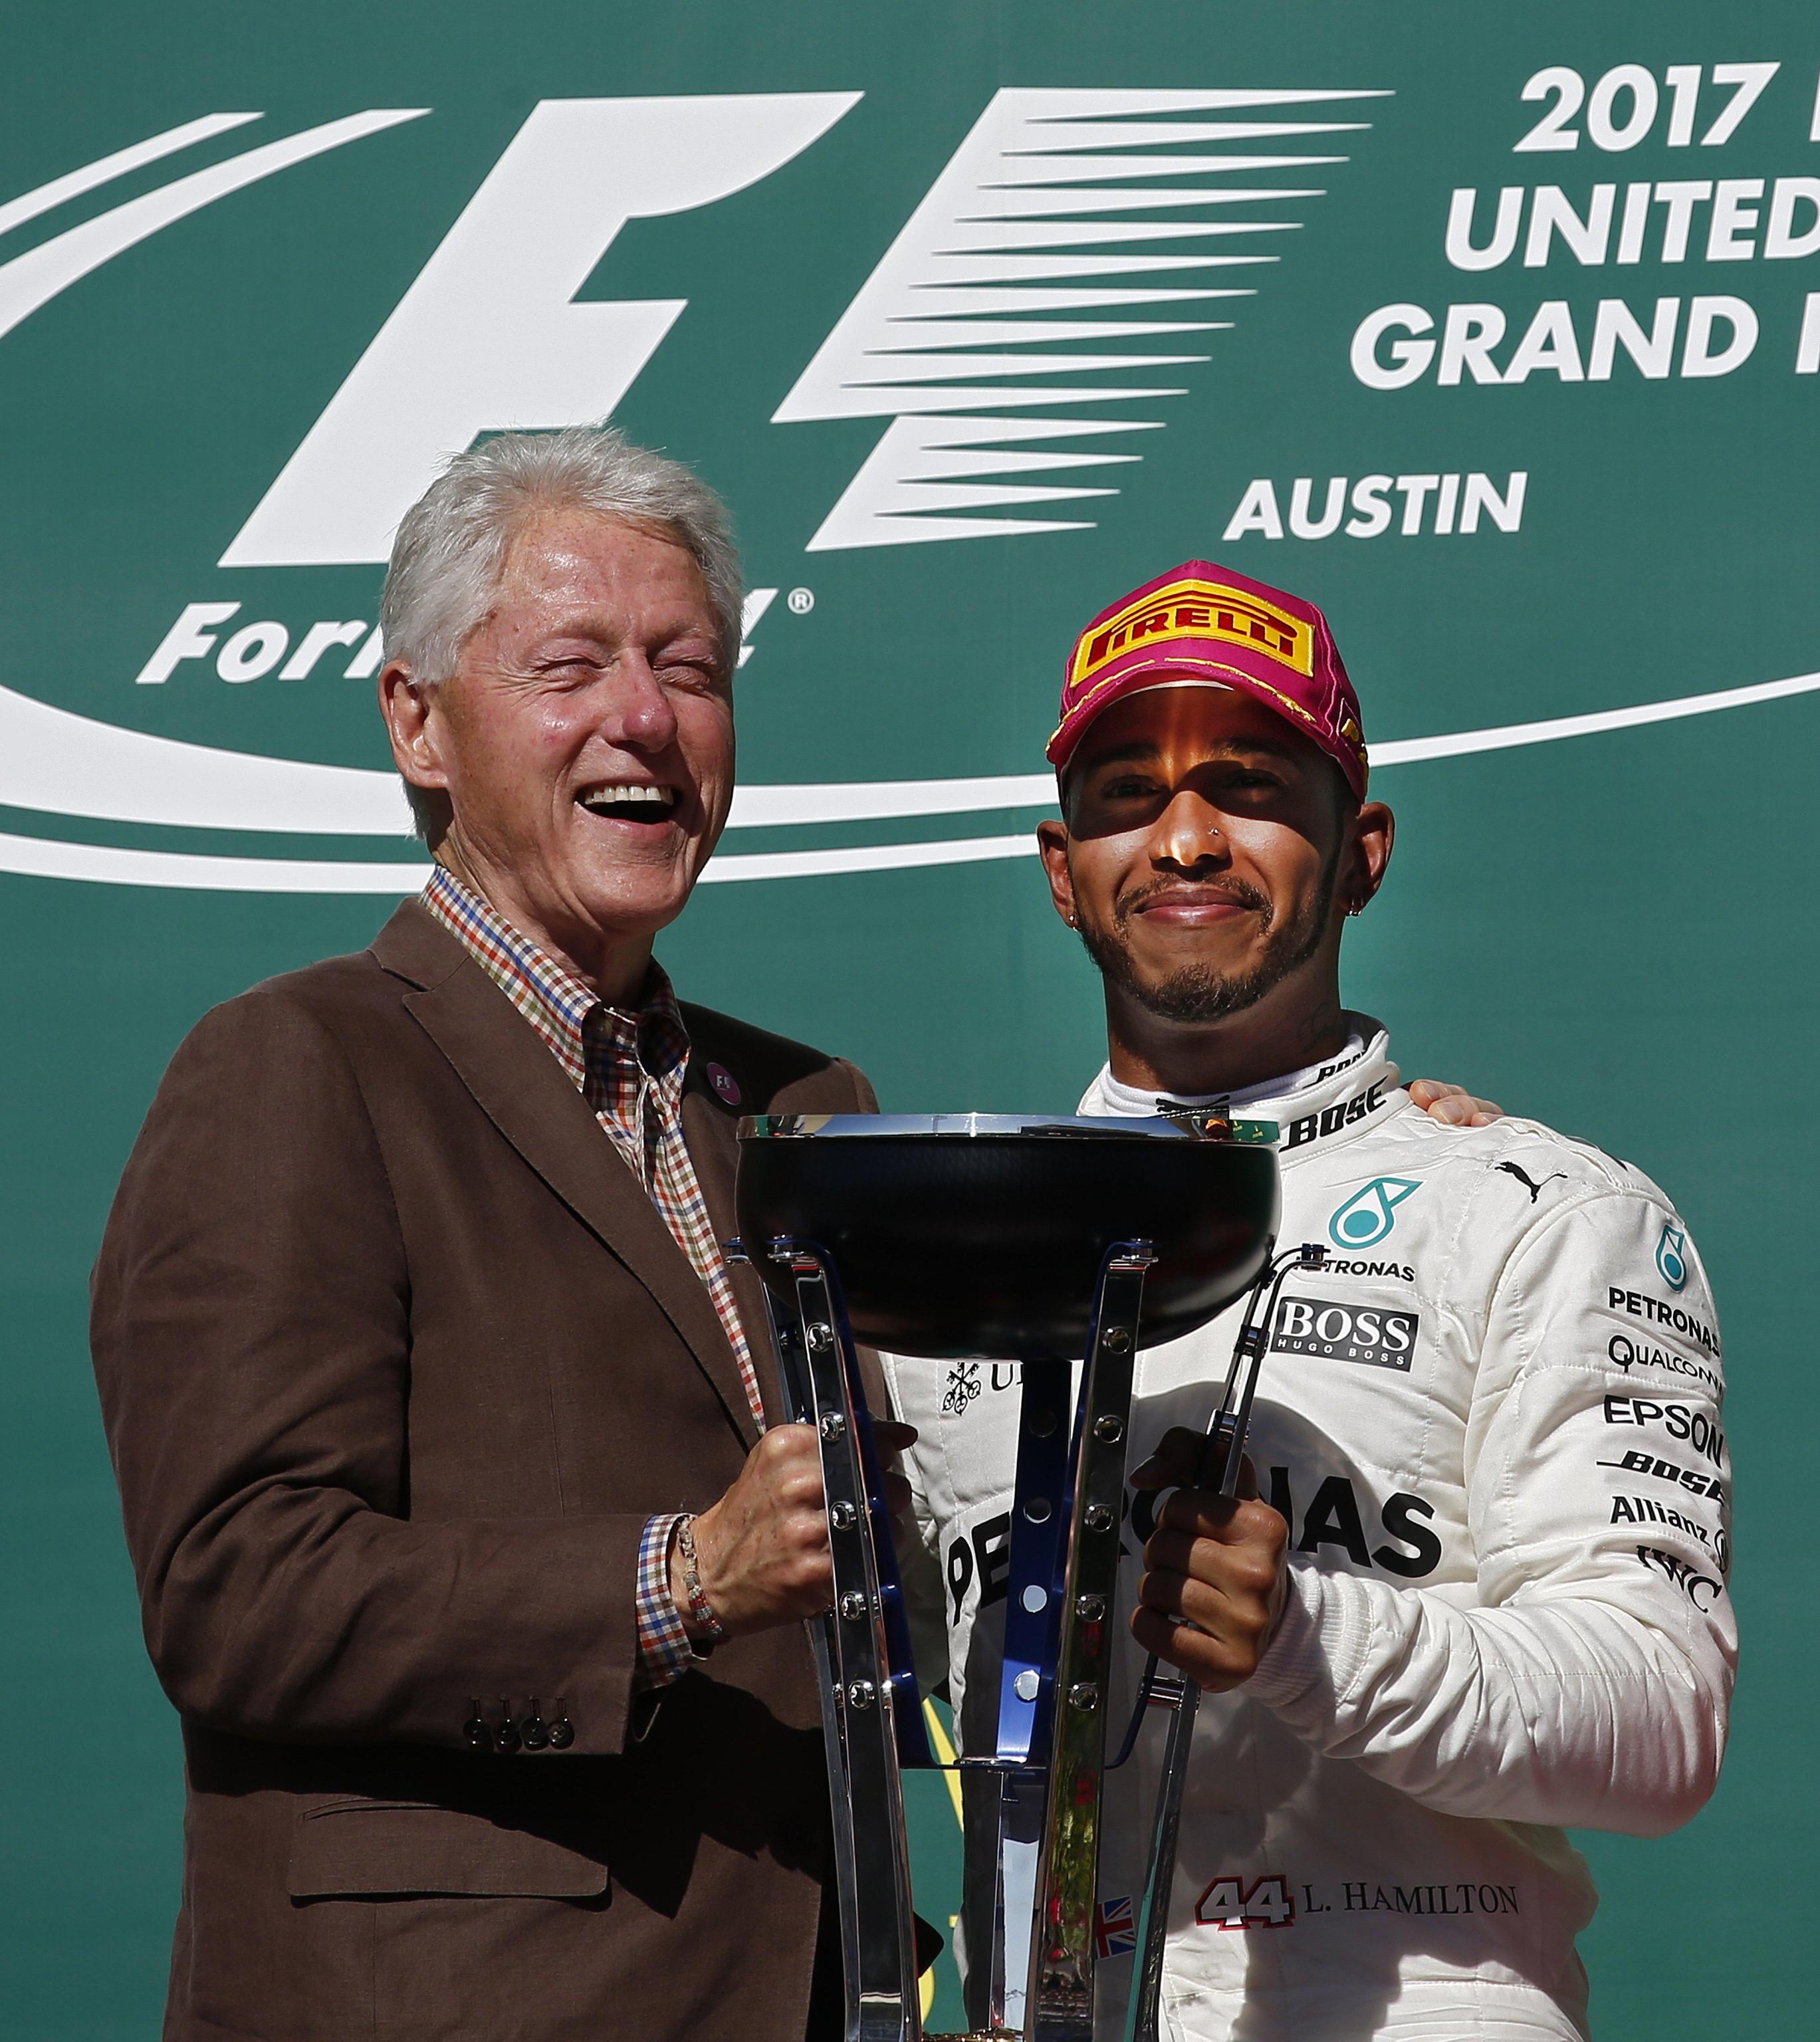 L'ex presidente degli Stati Uniti Bill Clinton consegna la coppa al vincitore del Gran Prix delle Americhe, il pilota Mercedes Lewis Hamilton